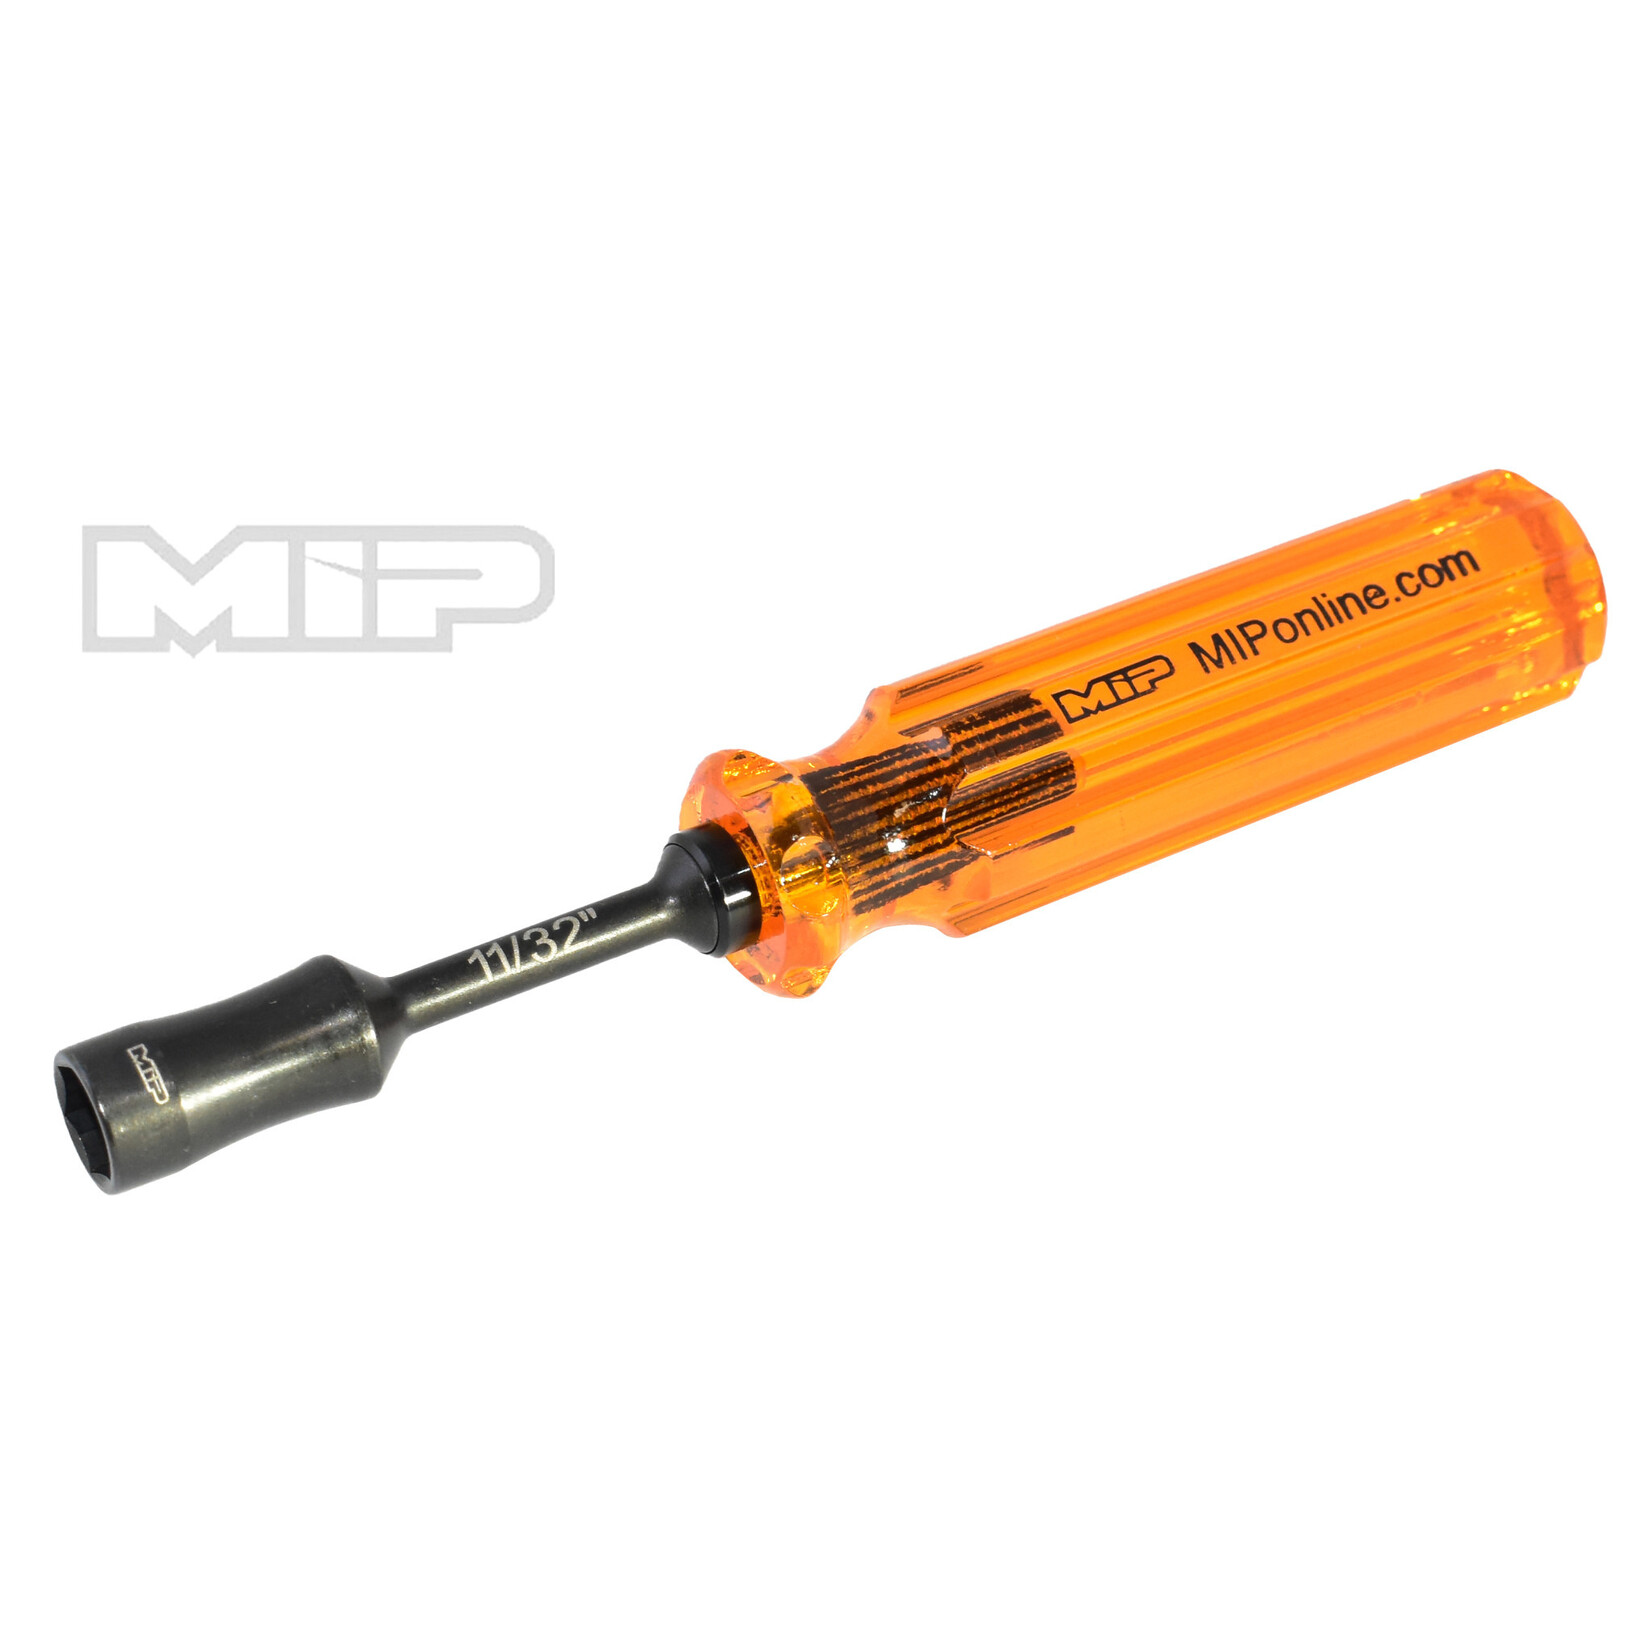 MIP MIP9809  MIP 11/32" Nut Driver Wrench, Gen 2